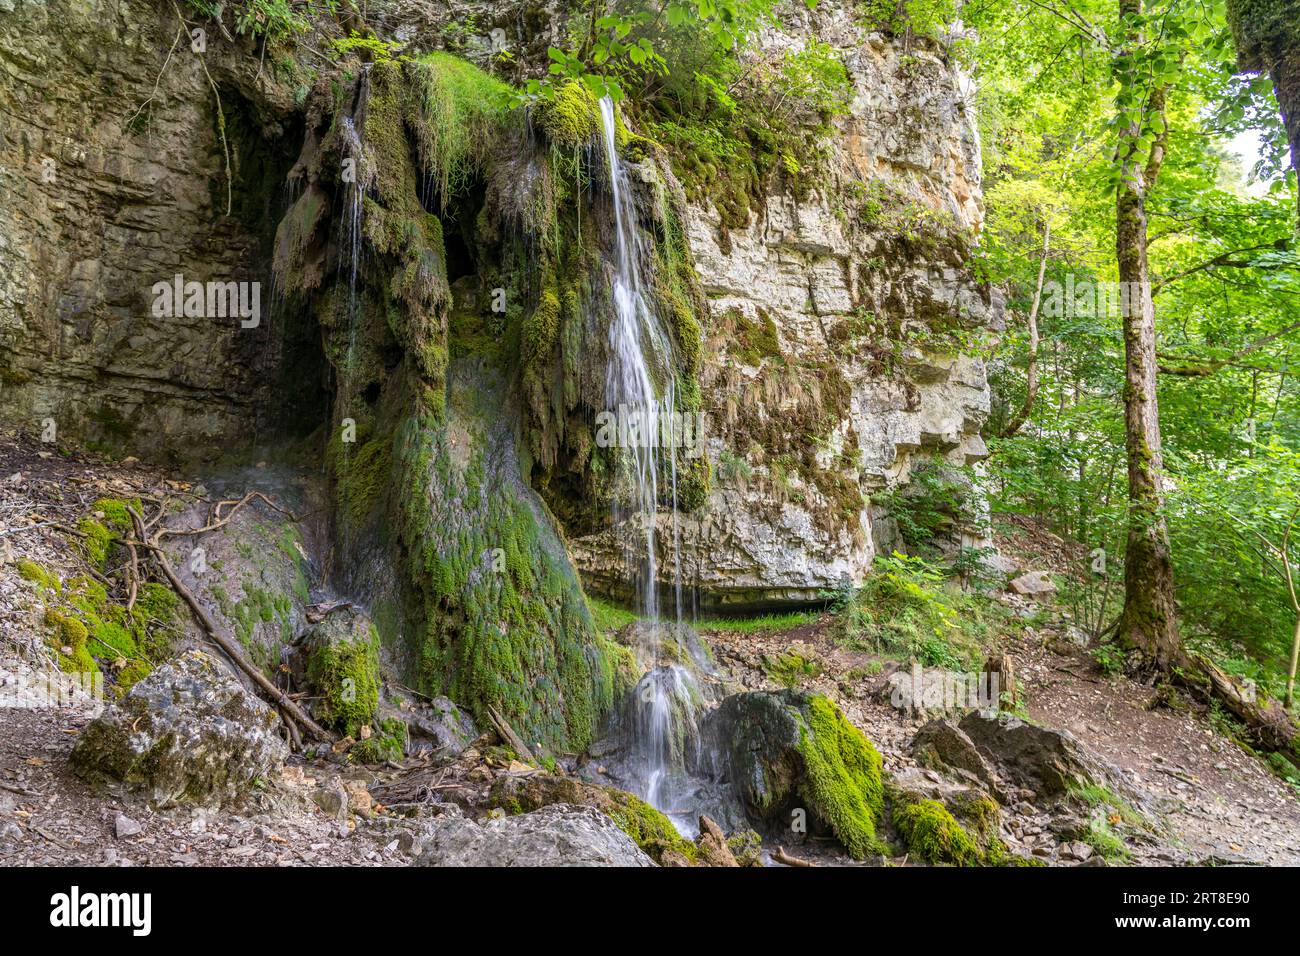 Der Tannegger Wasserfall in der Wutachschlucht, Schwarzwald, Baden-Württemberg, Deutschland |   Tannegger waterfall at the Wutach Gorge, Black Forest, Stock Photo